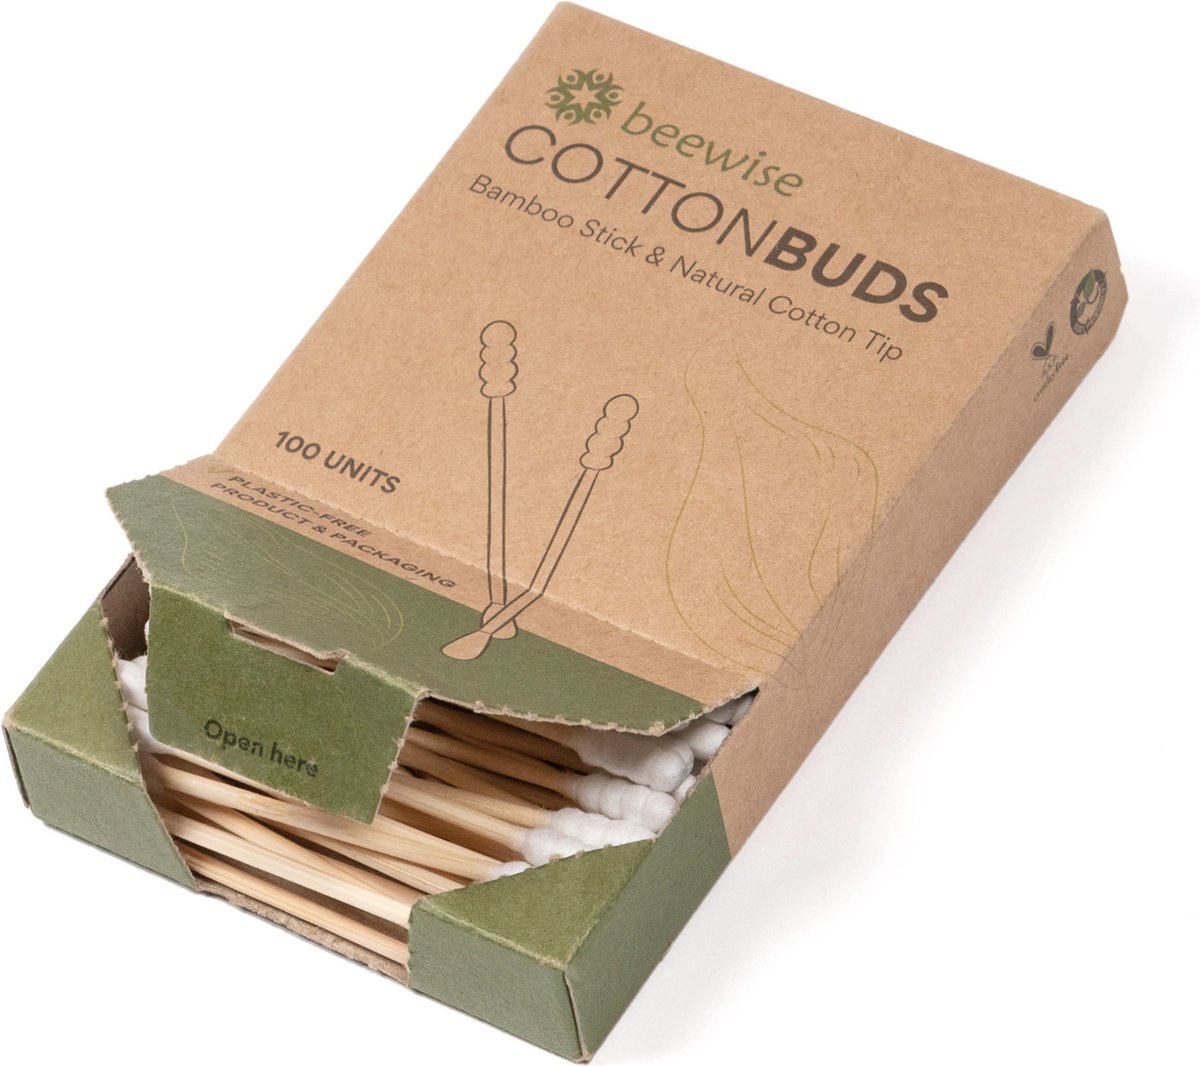 Bamboe Wattenstaafjes | Biologisch Afbreekbaar | Oorstokjes | Plastic-vrij | Biodegradable Cotton Swab | Bamboo Cotton Buds | 4 Packs x 100 stuks